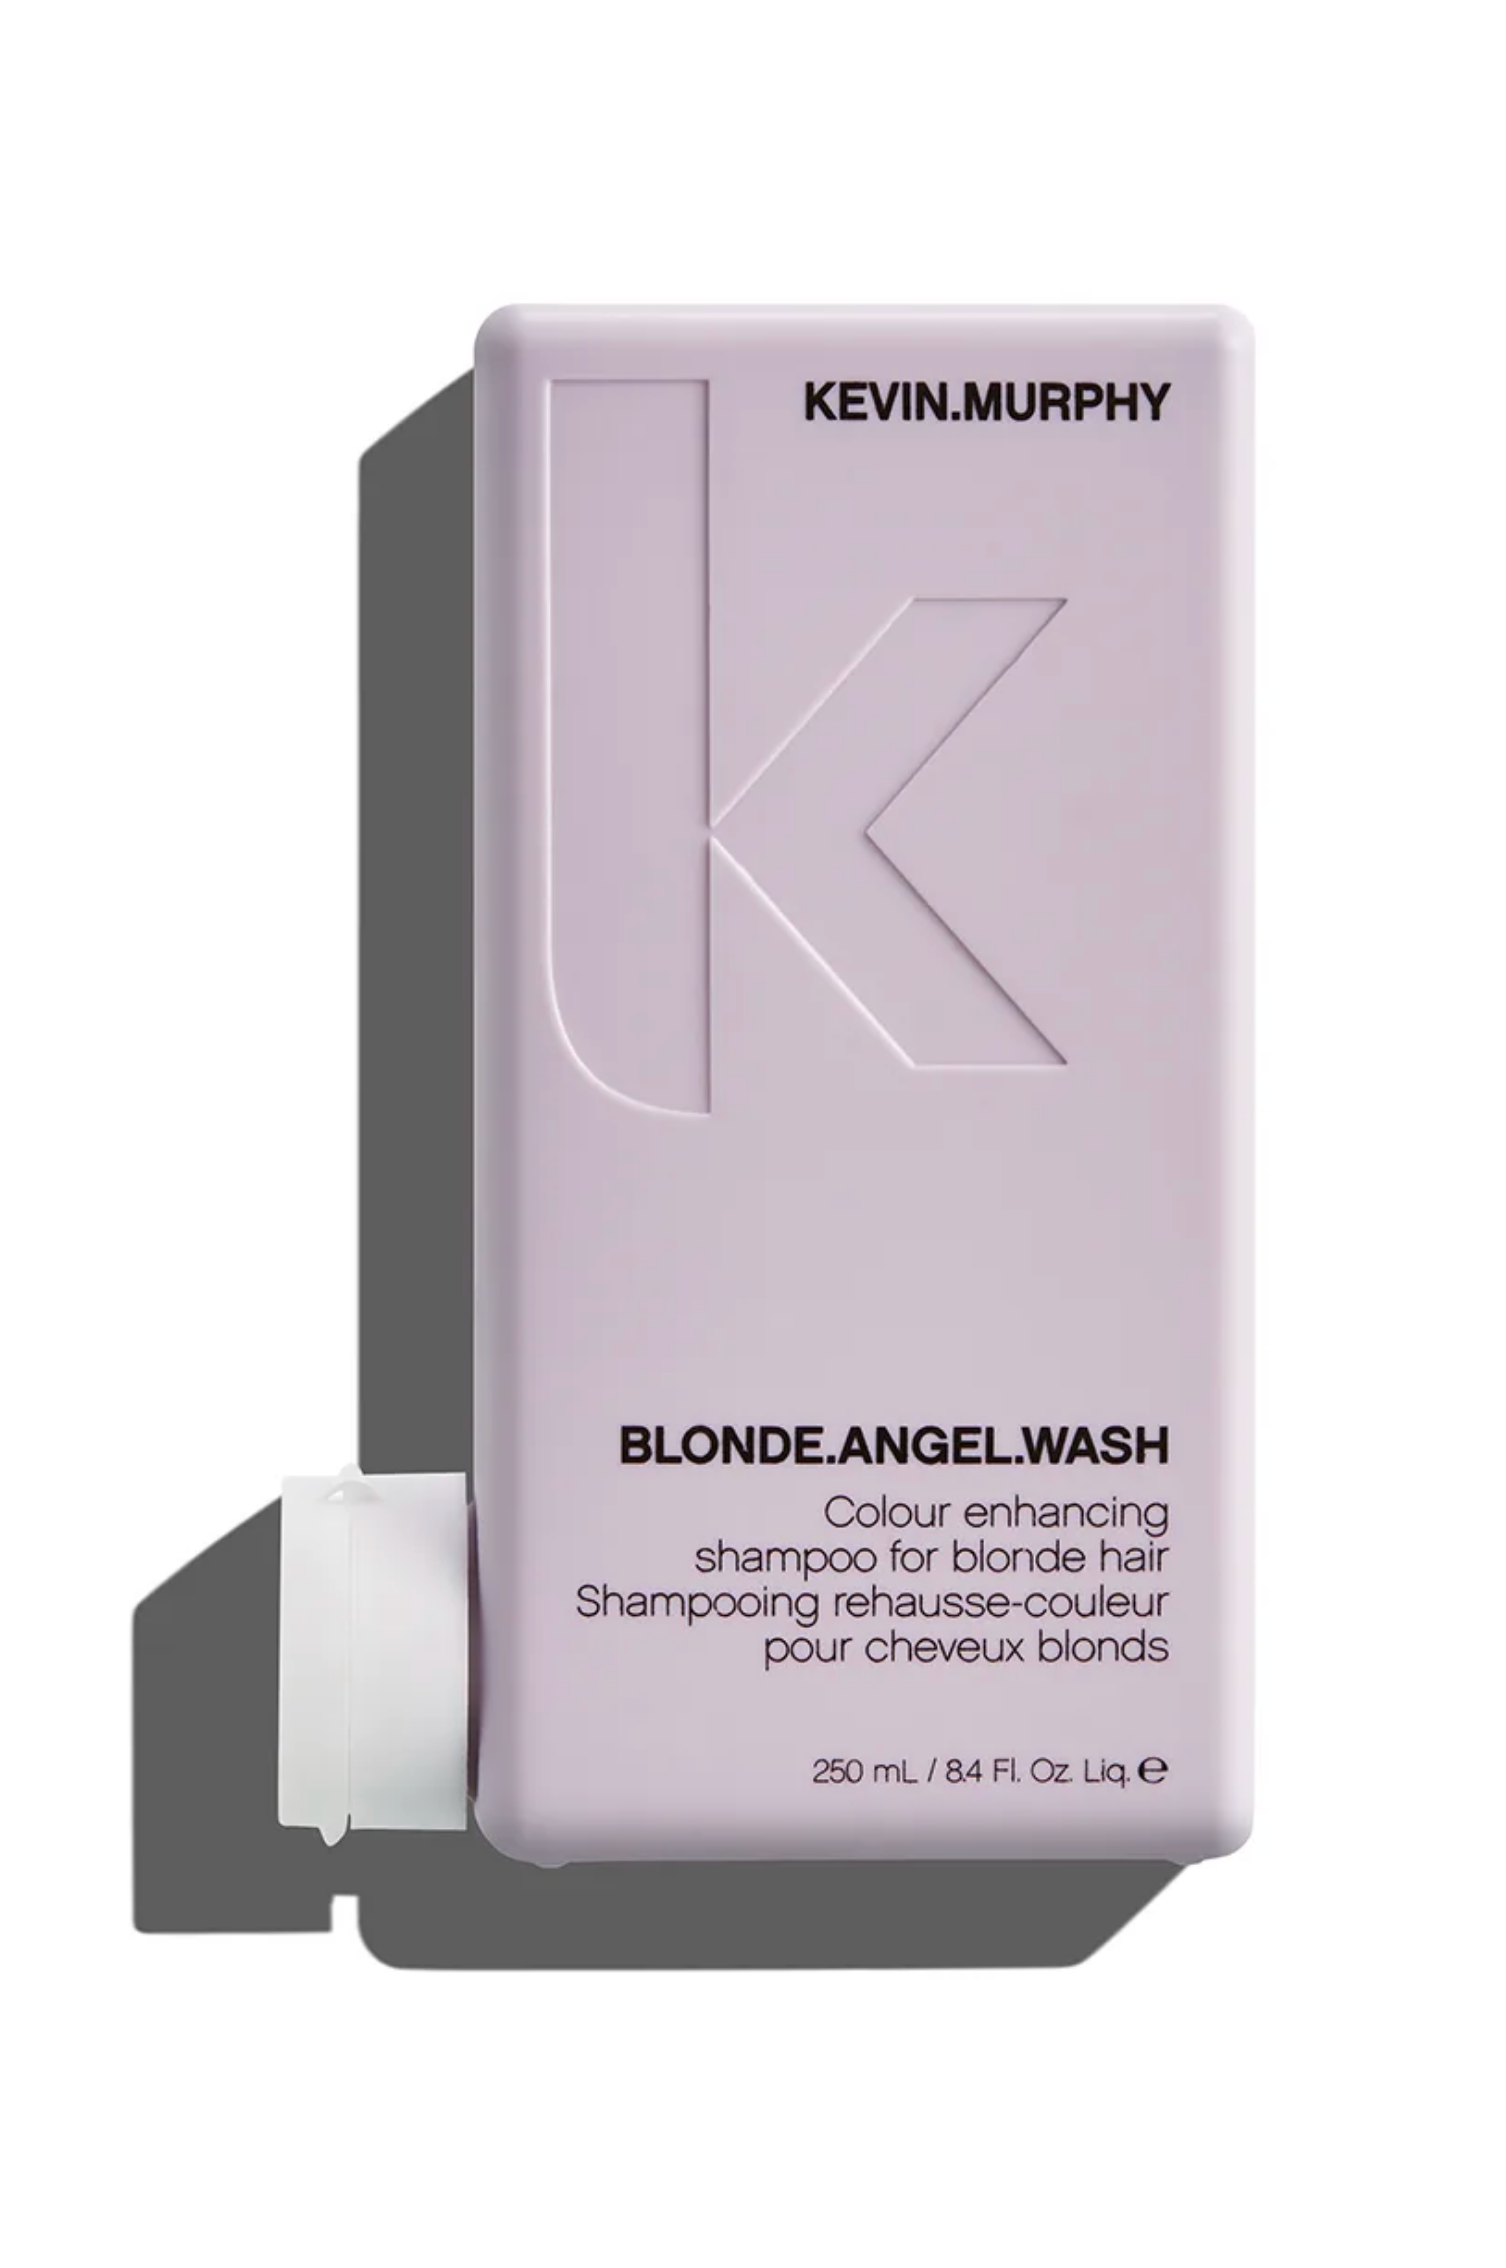 Shampooing rehausse couleur pour cheveux blonds Kevin Murphy Blonde Angel Wash- Crème Salon